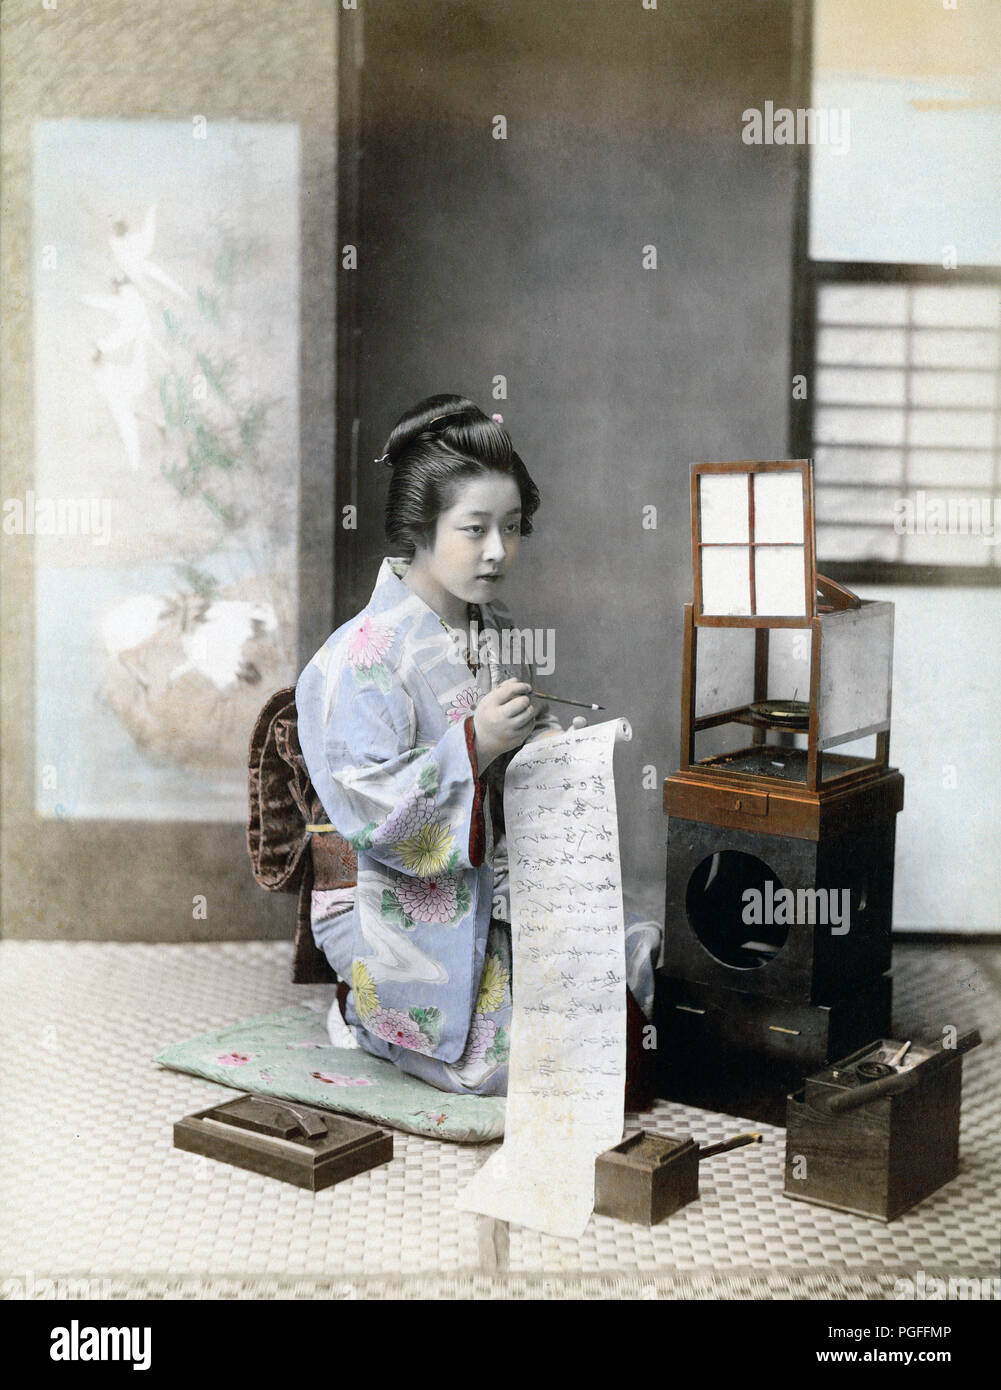 [ Ch. 1890 Japon - femme écrivant une lettre ] - une femme en kimono écrit une lettre de défilement à côté d'une lampe andon (行灯). Il y a une pierre à encre dans la boîte en bois sur sa droite. Il y a une pendaison faites défiler l'illustre avec des oiseaux derrière elle. Albumen photographie sourcé par Kozaburo Tamamura (1856-1923 ?), années 1890, pour "Le Japon, décrit et illustré par les Japonais", selon l'édition de Shogun par le capitaine F Brinkley. Publié en 1897 par J B Millet Company, Boston, Massachusetts, USA. 19e siècle vintage albumen photo. Banque D'Images